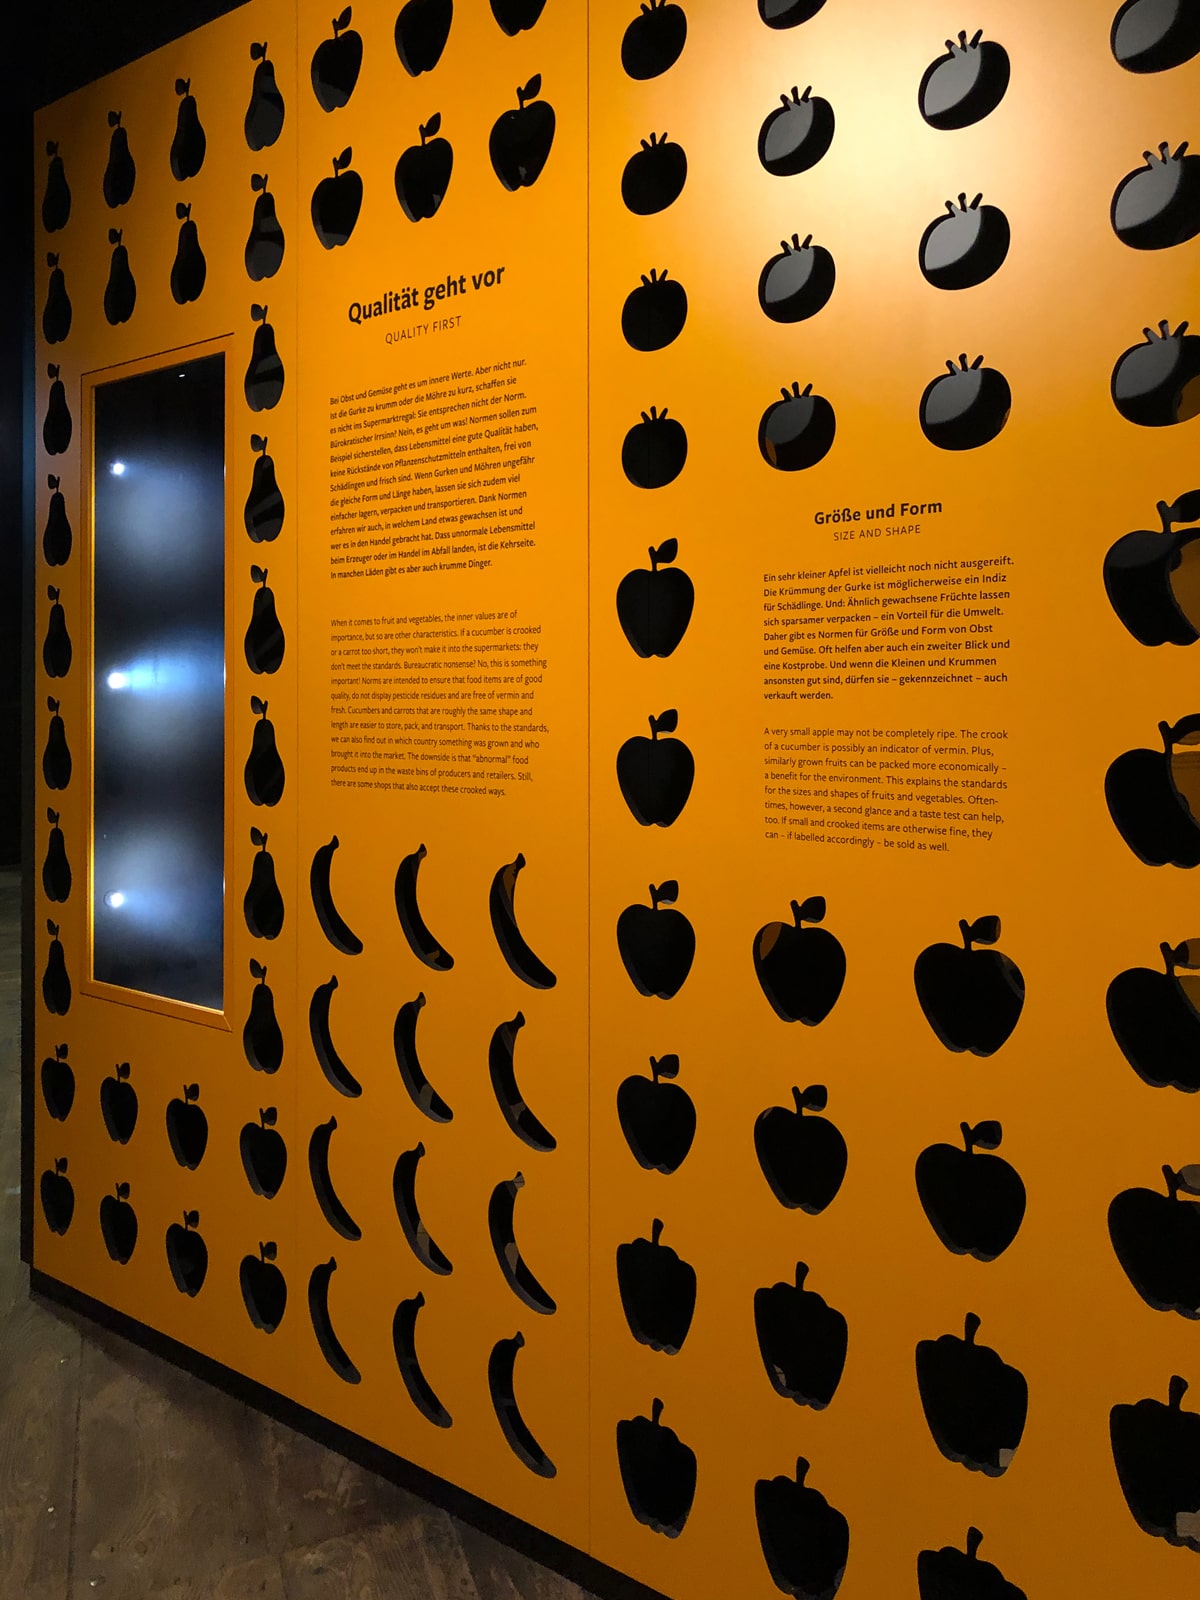 Deutsches Gartenbaumuseum Ausstellungsfoto DIN Wand mit ausgeschnittenem Obst